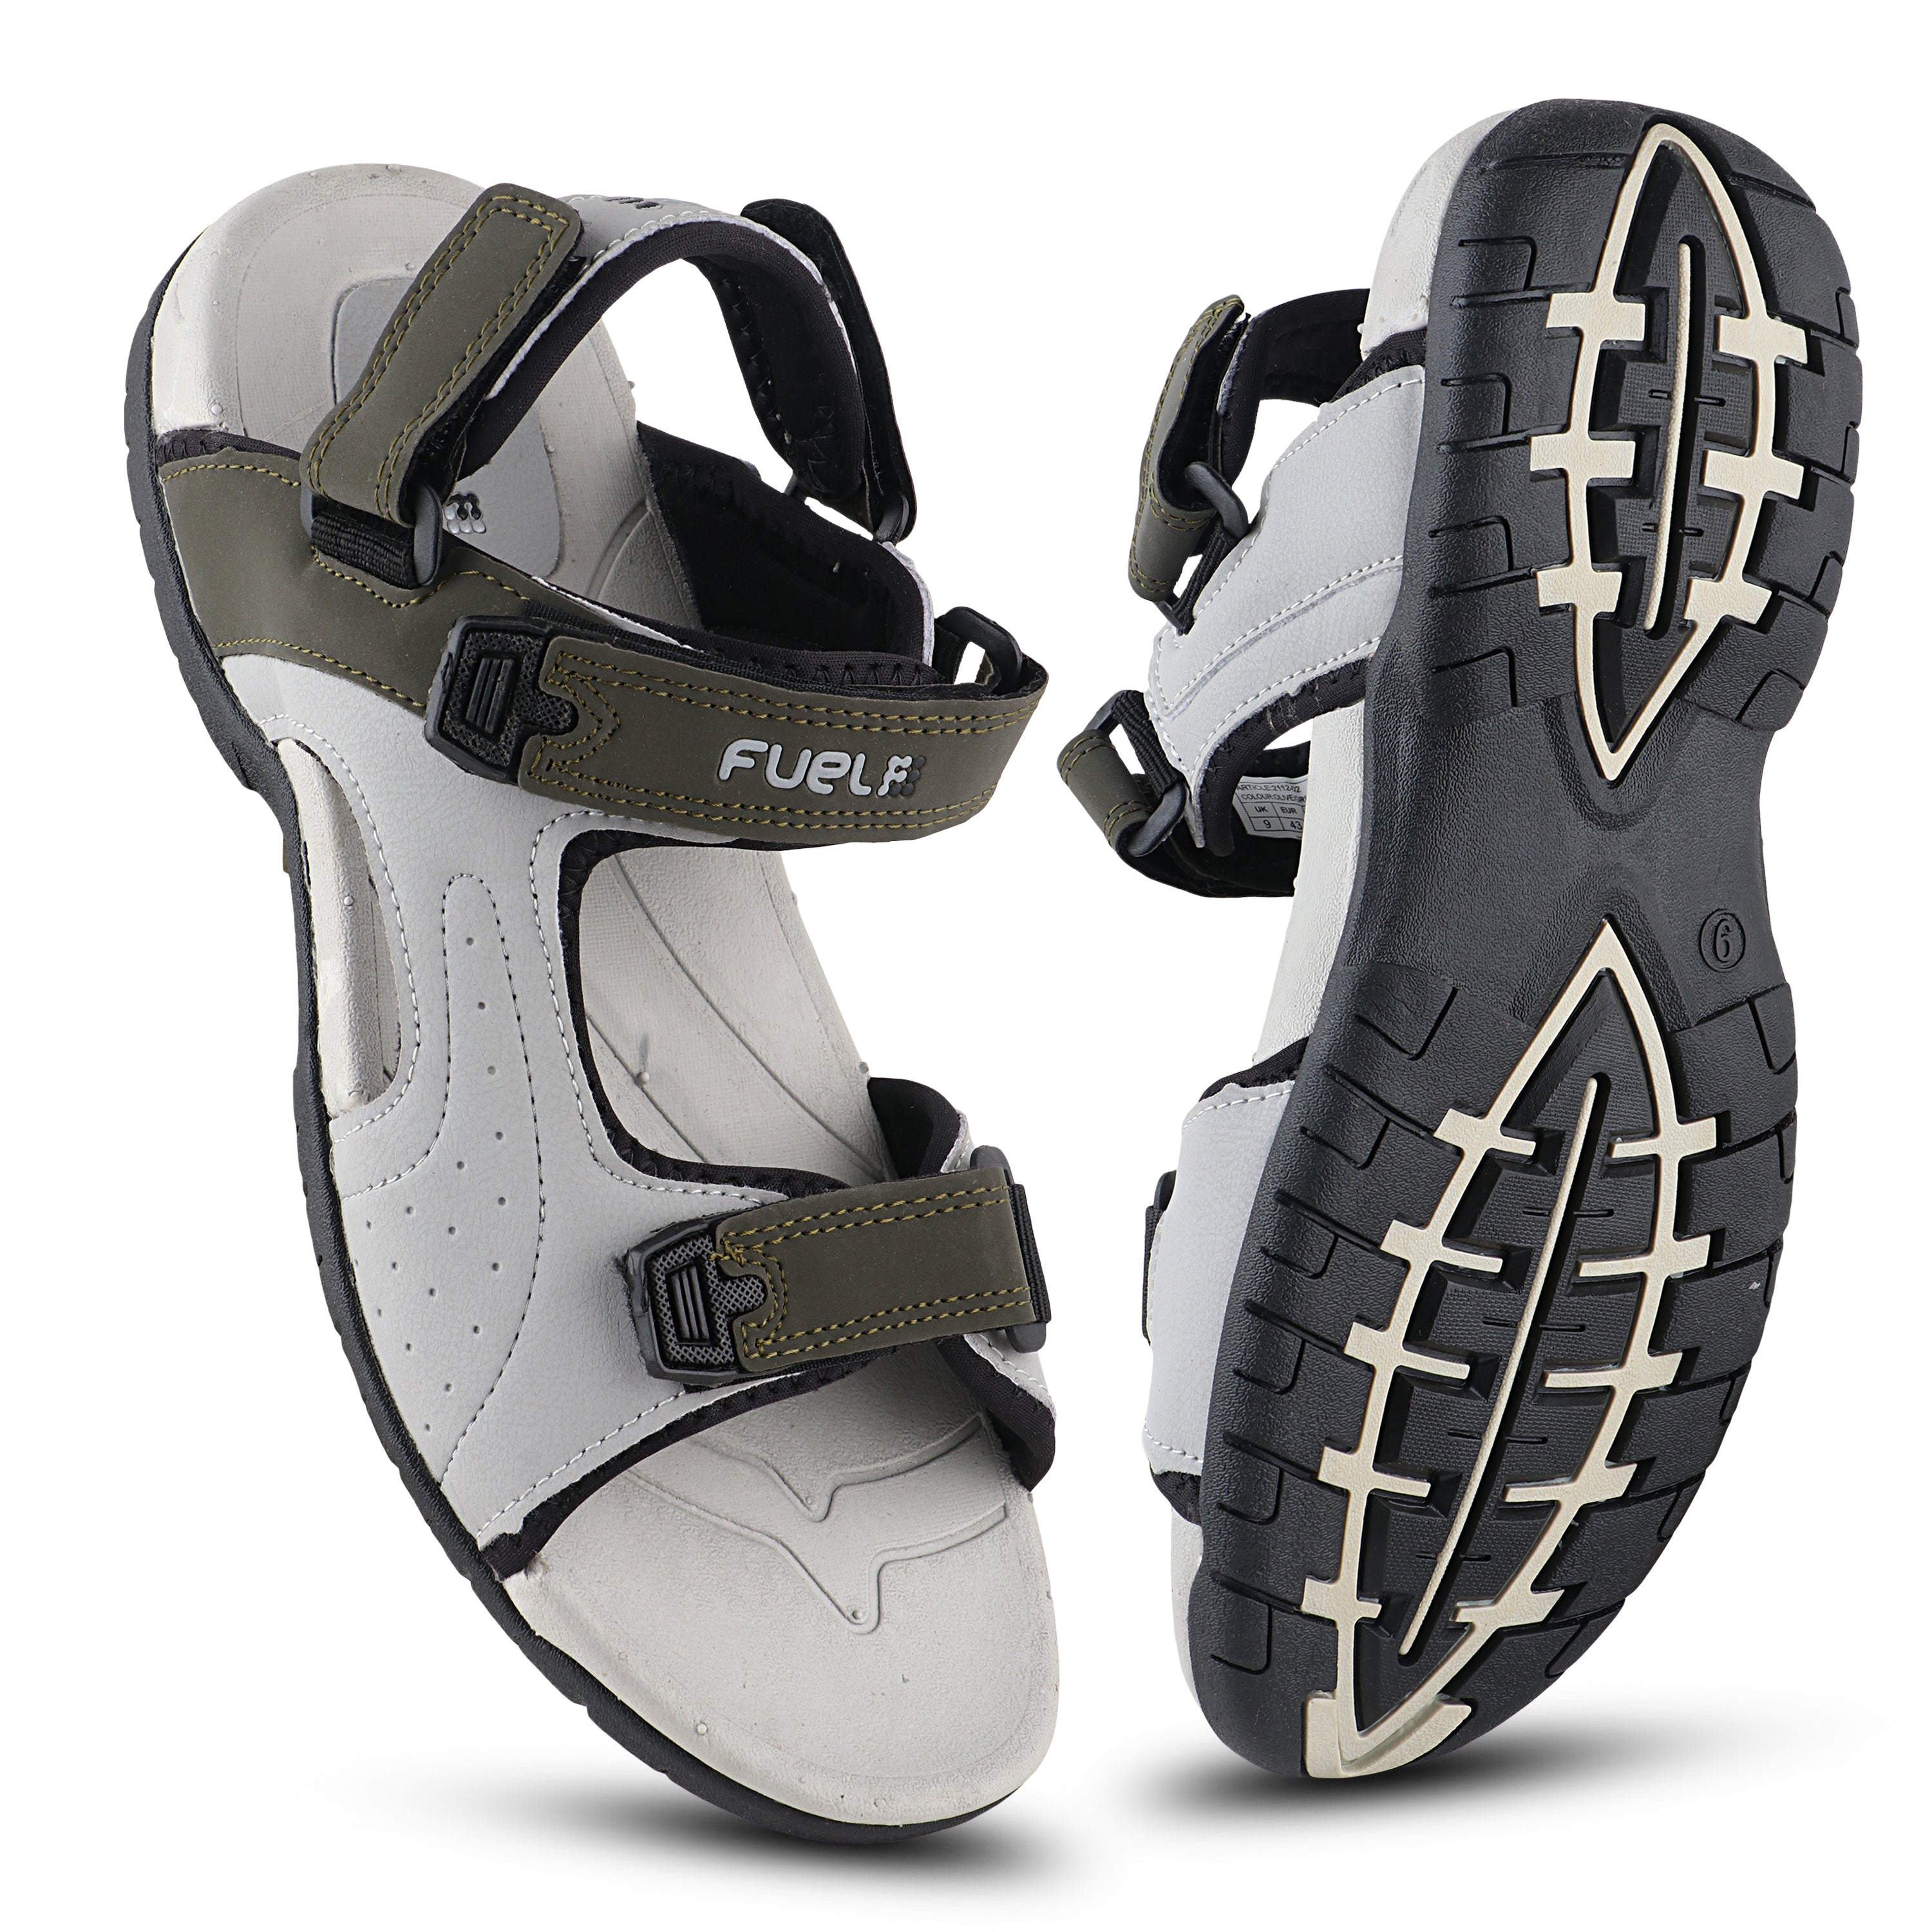 Fuel 2112-02 Sandals For Men's (Olive-Grey)